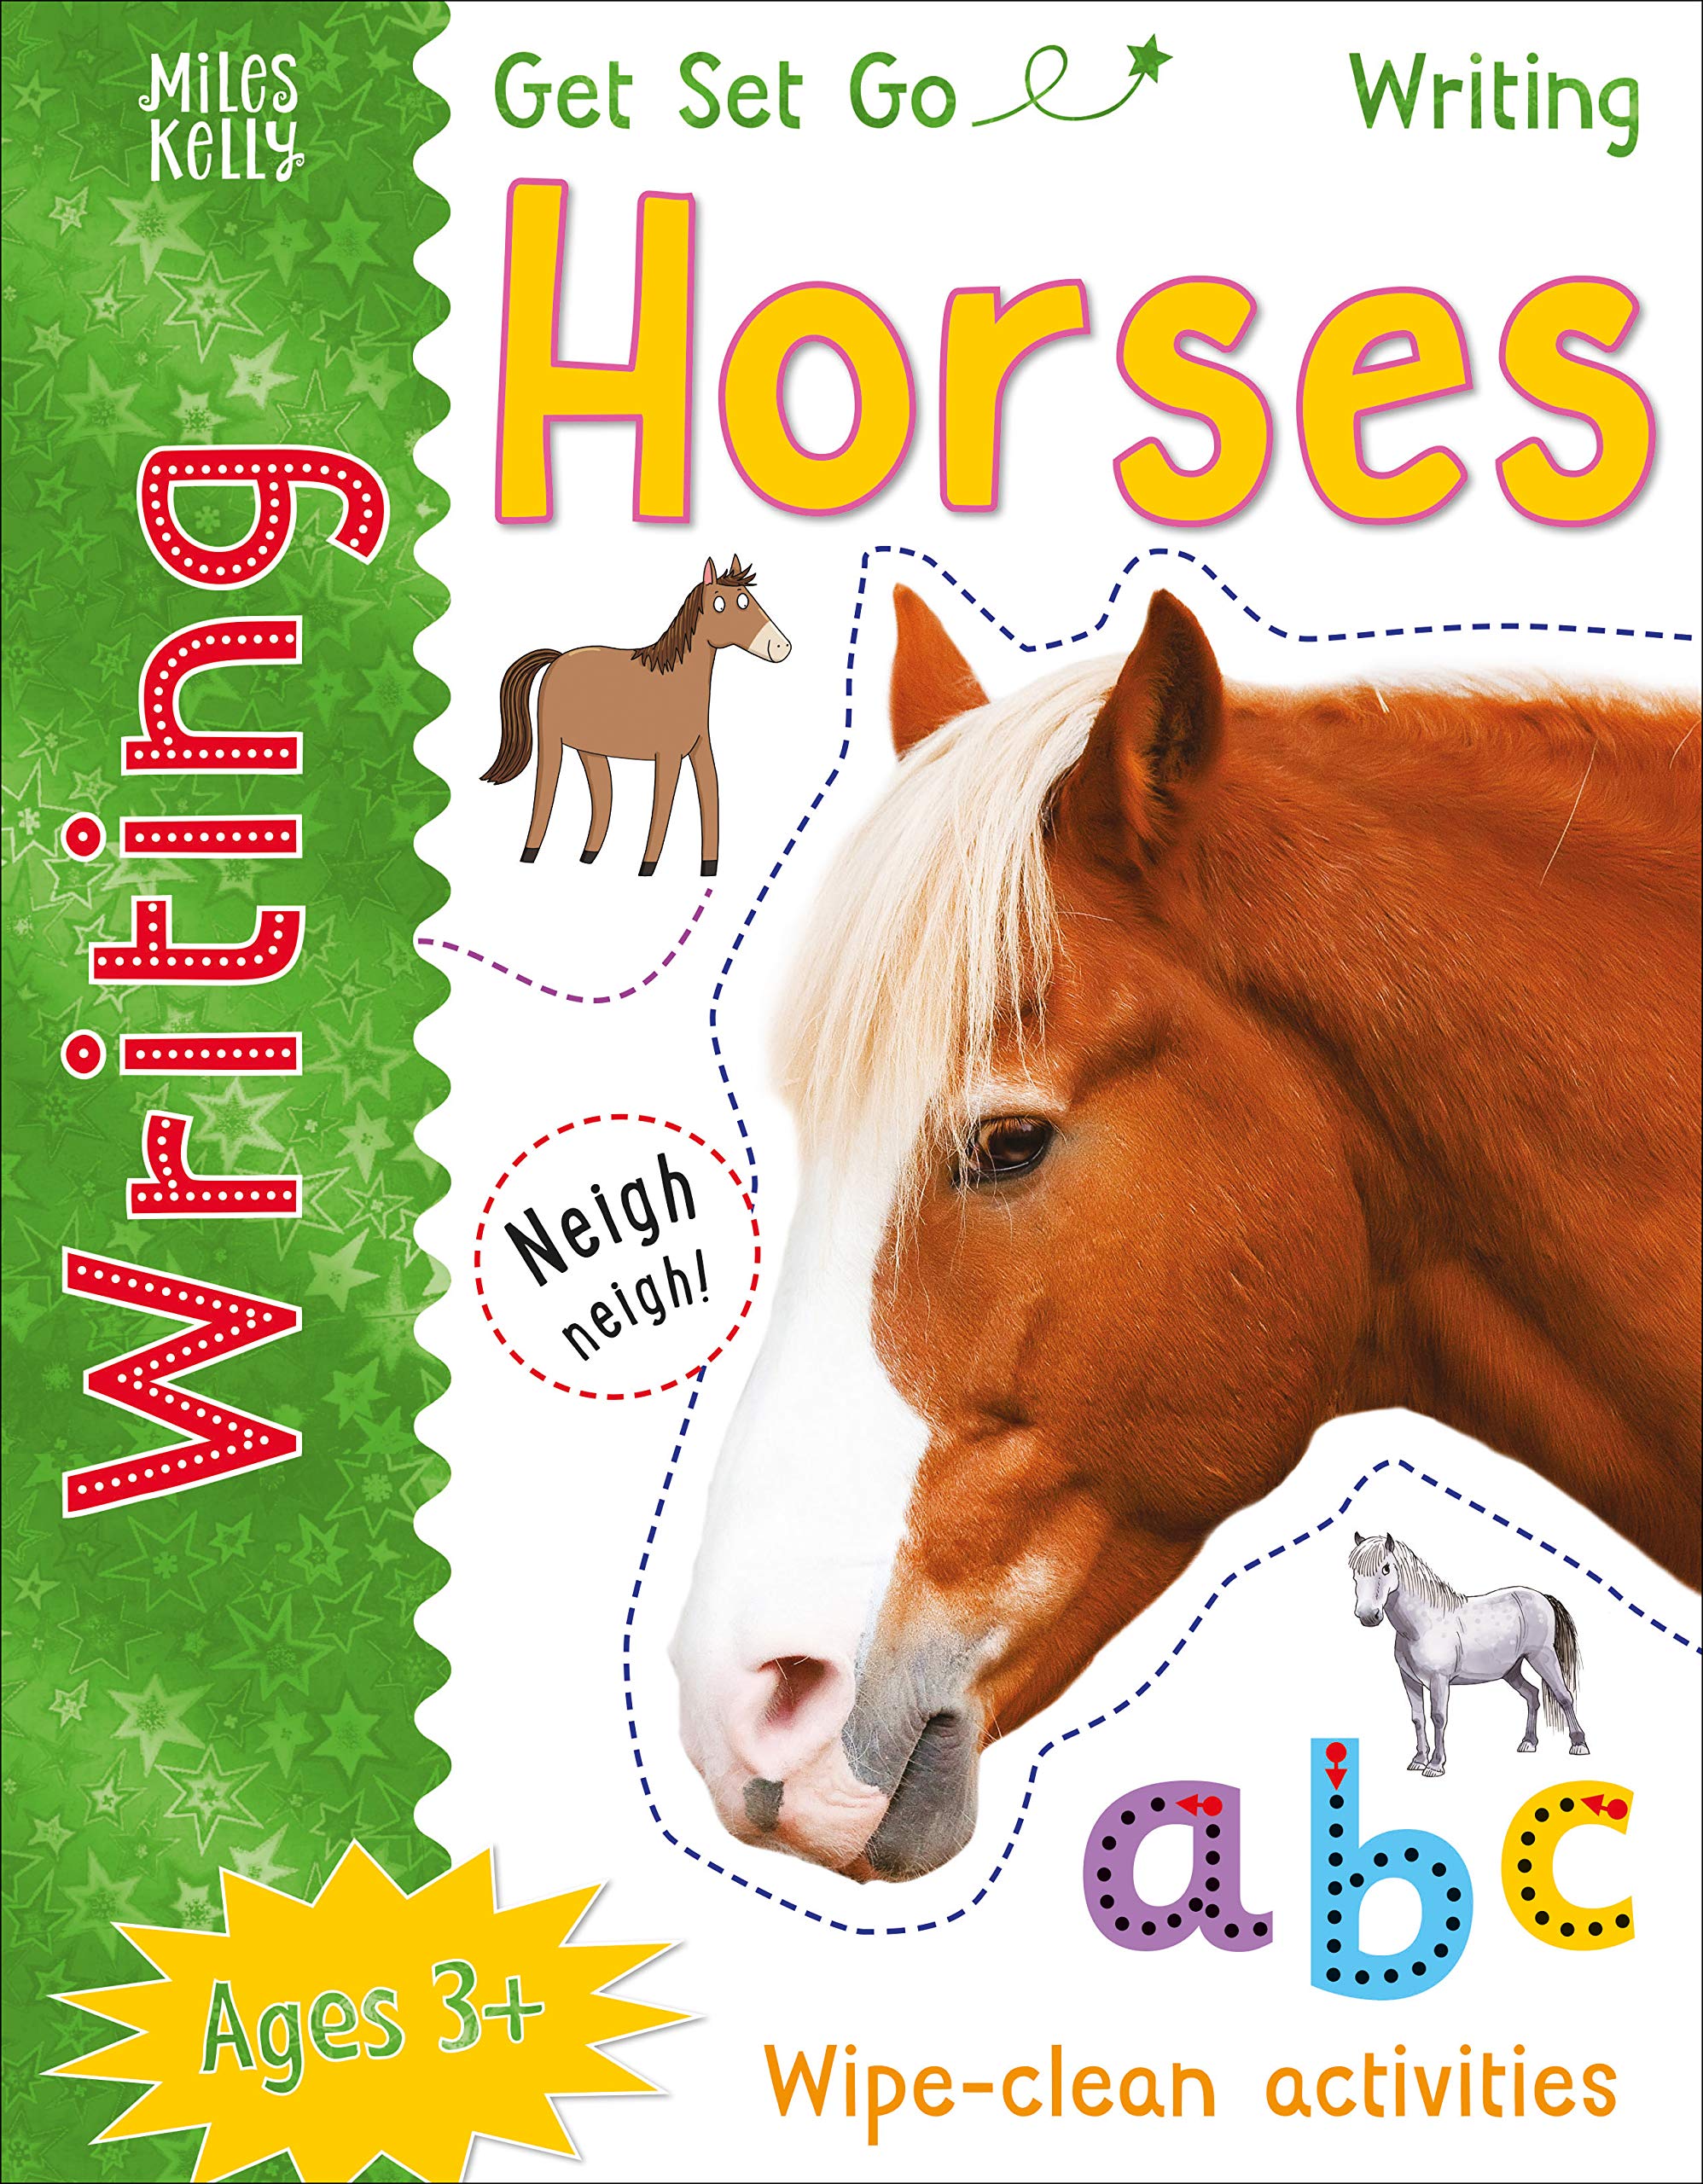 GSG Writing Horses (Get Set Go Writing)